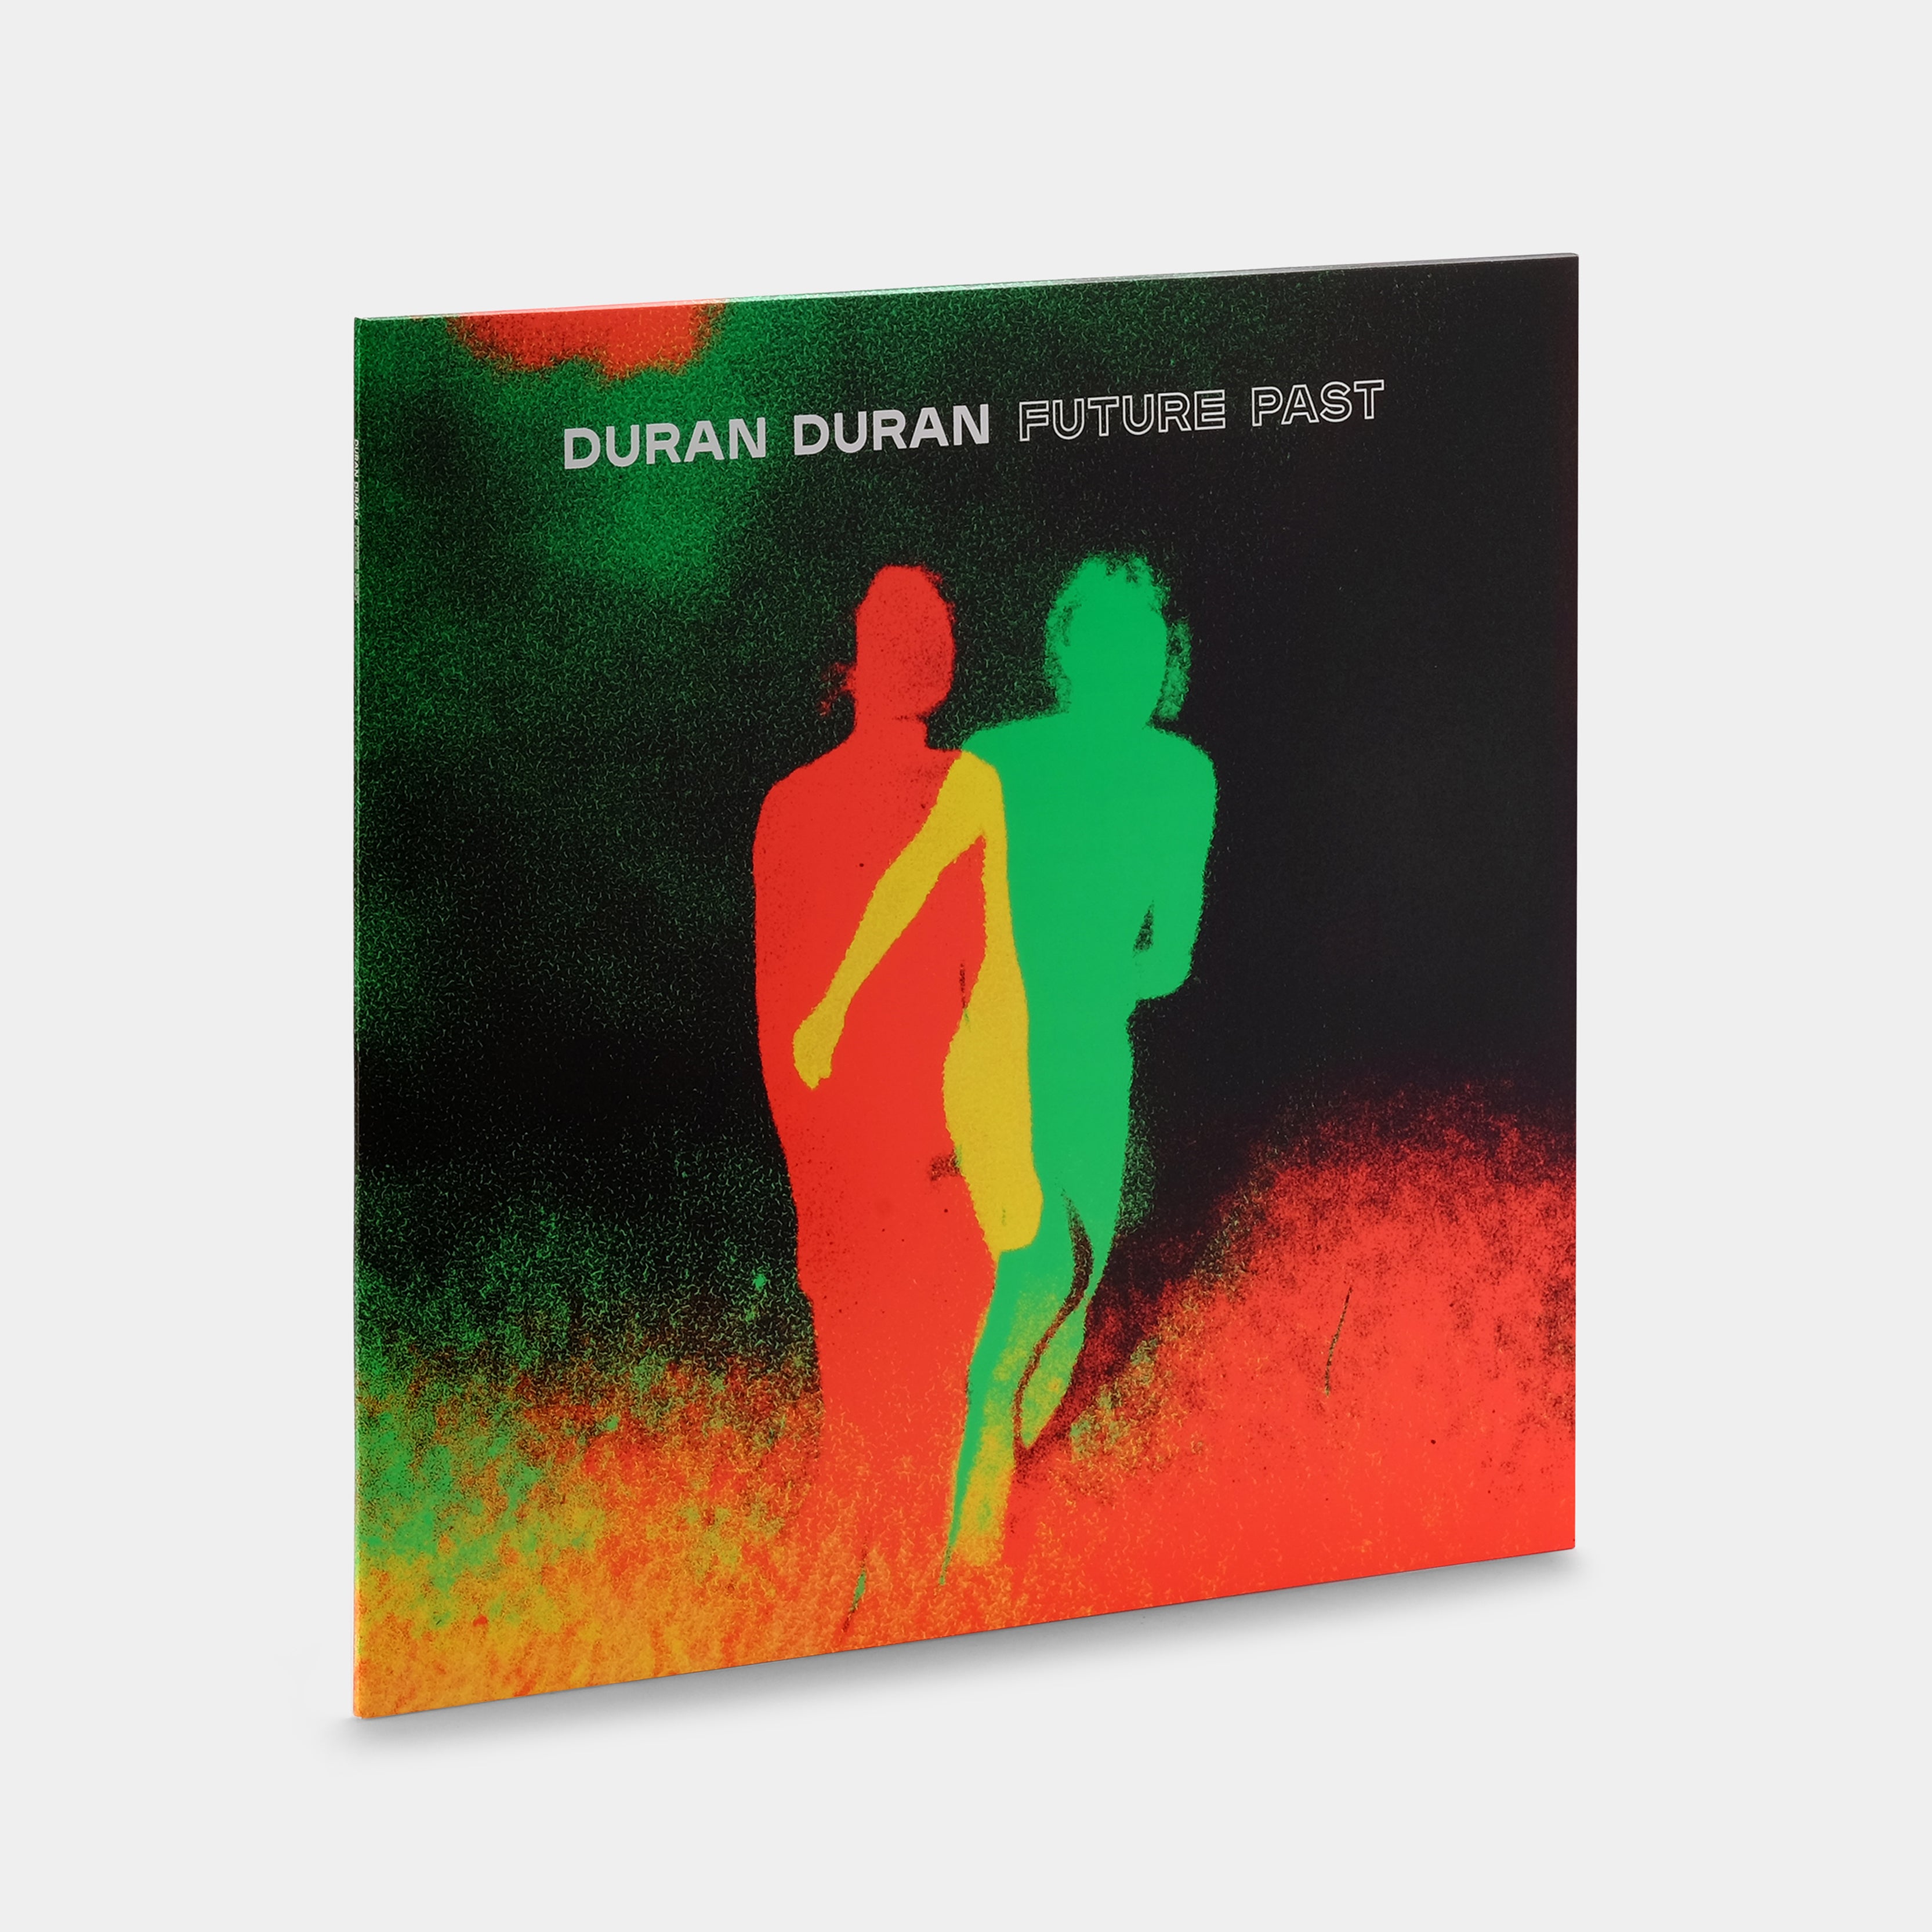 Duran Duran - Future Past (Indie Exclusive) LP Transparent Red Vinyl Record